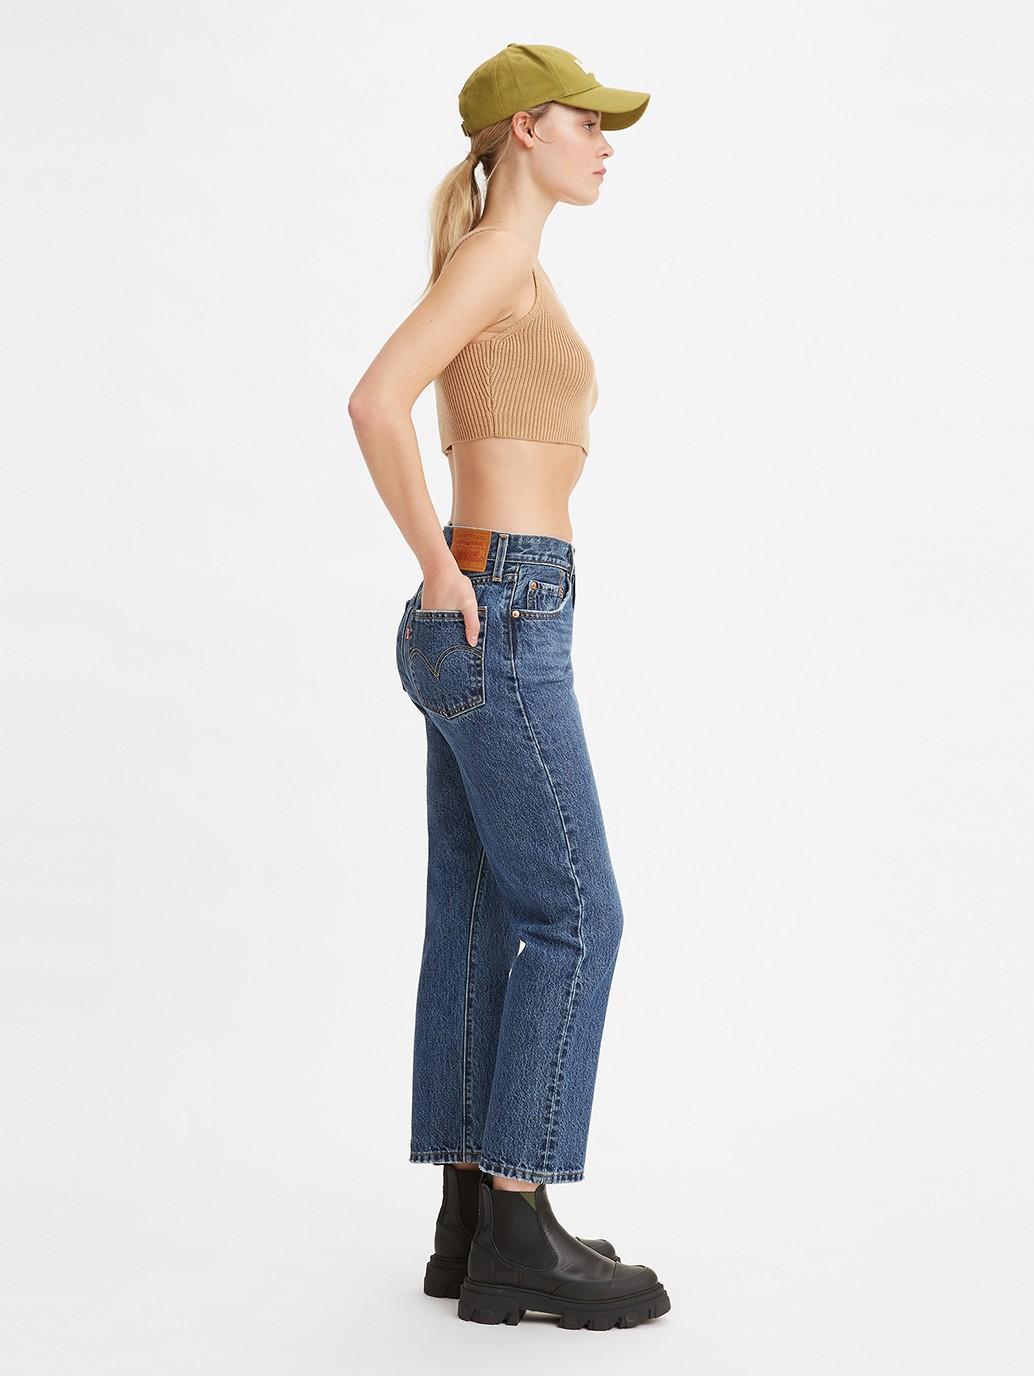 Buy Levi's® Women's 501® Original Cropped Jeans| Levi’s® Official ...